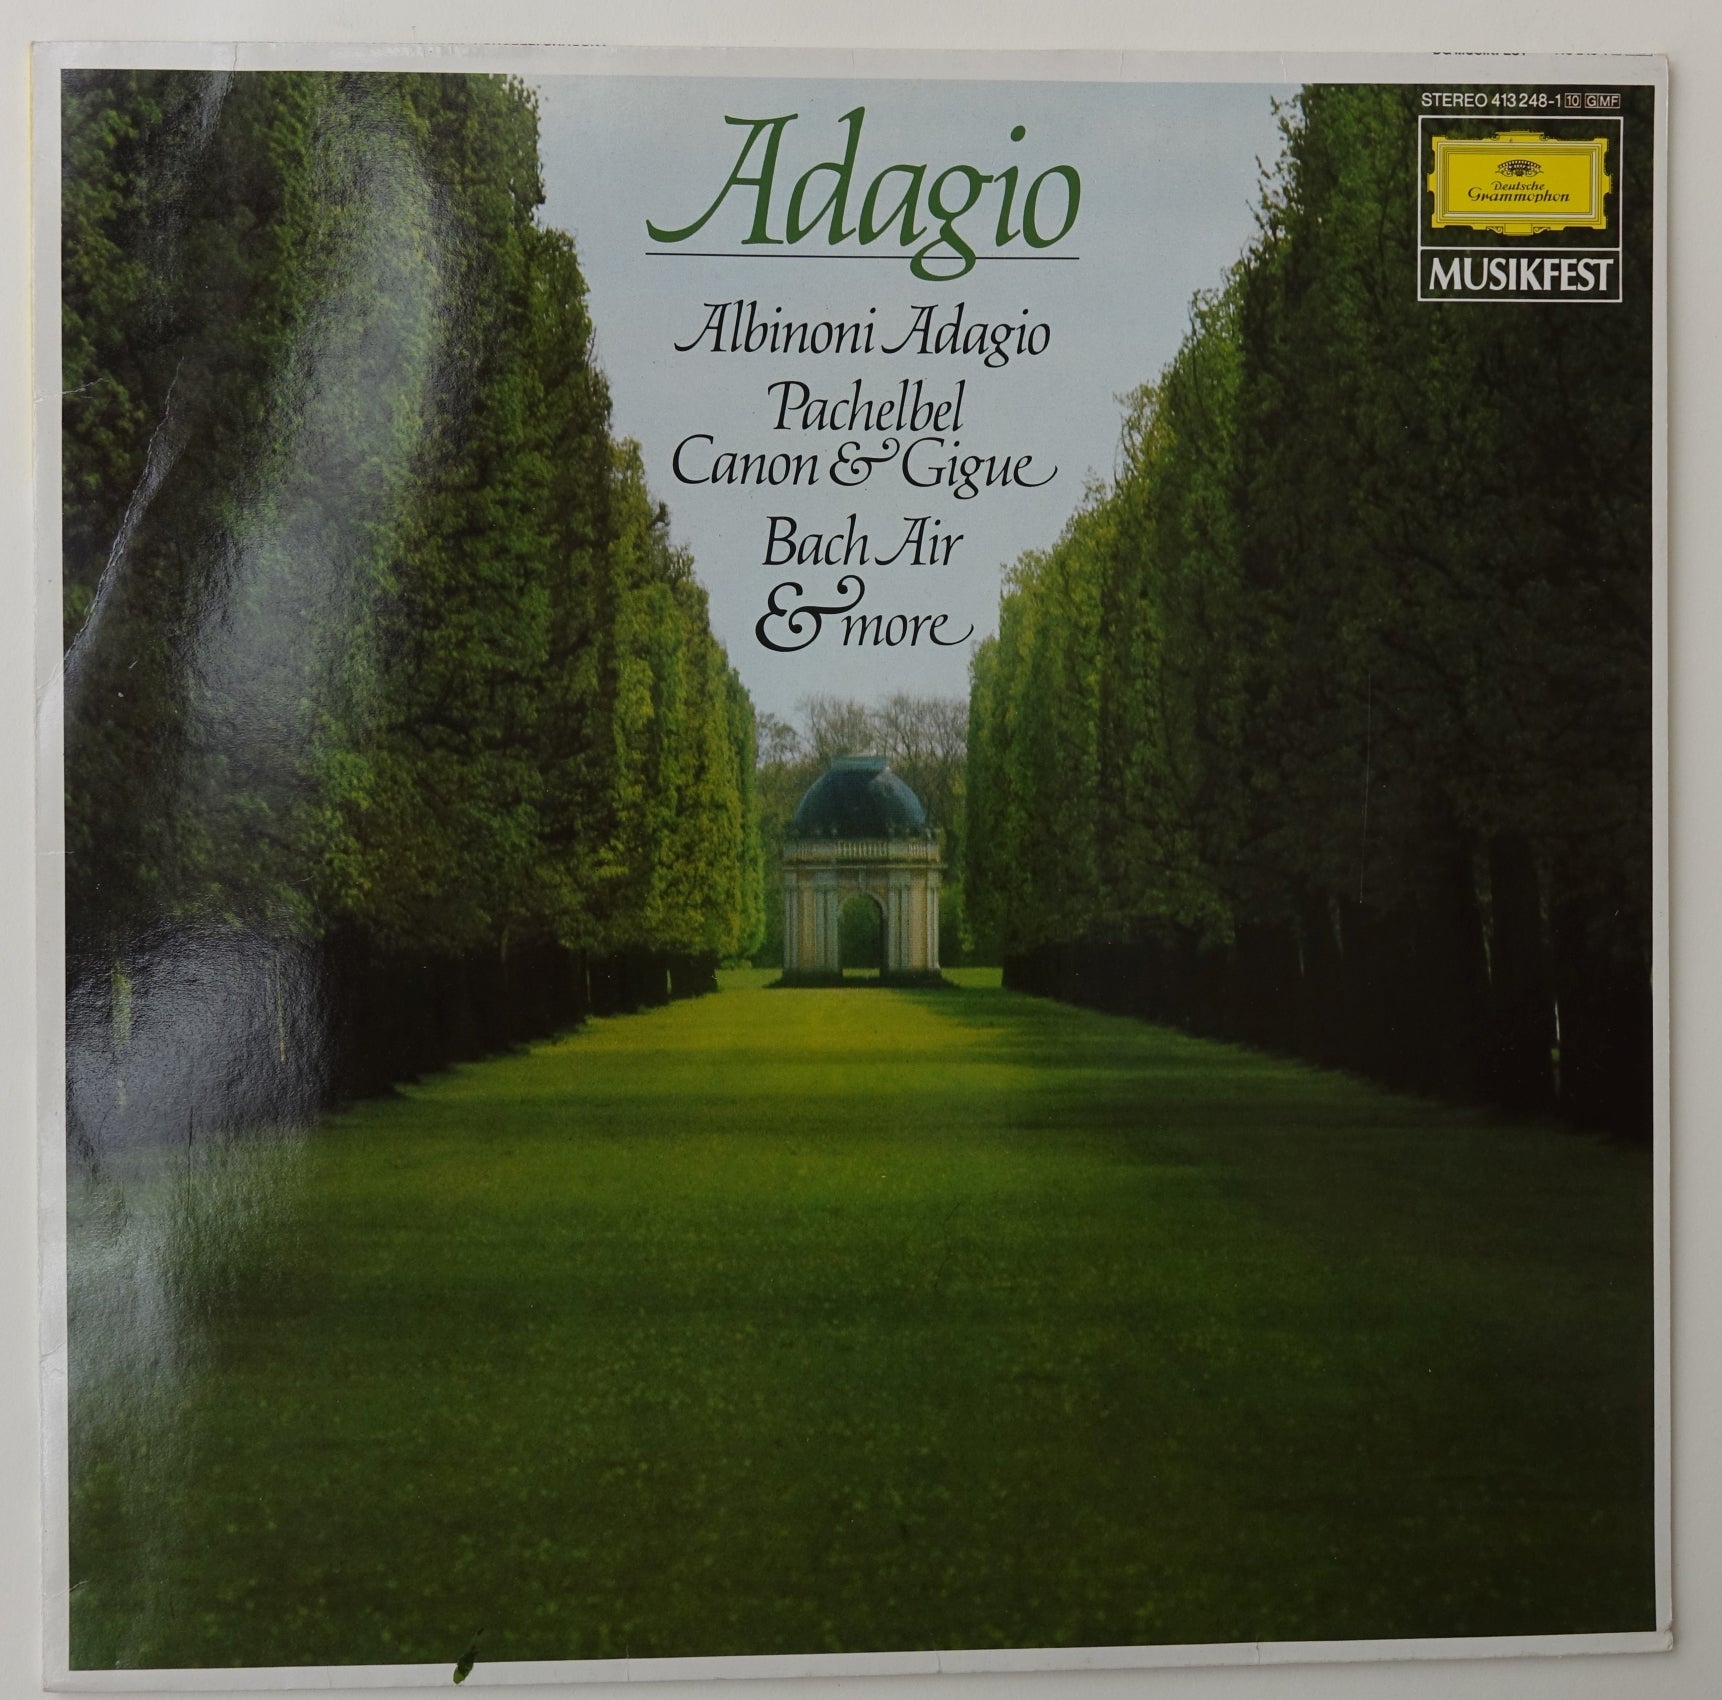 GRA002: Adagio - Albinoni Adagio & Pachelbel Canon & Gigue Bach Air